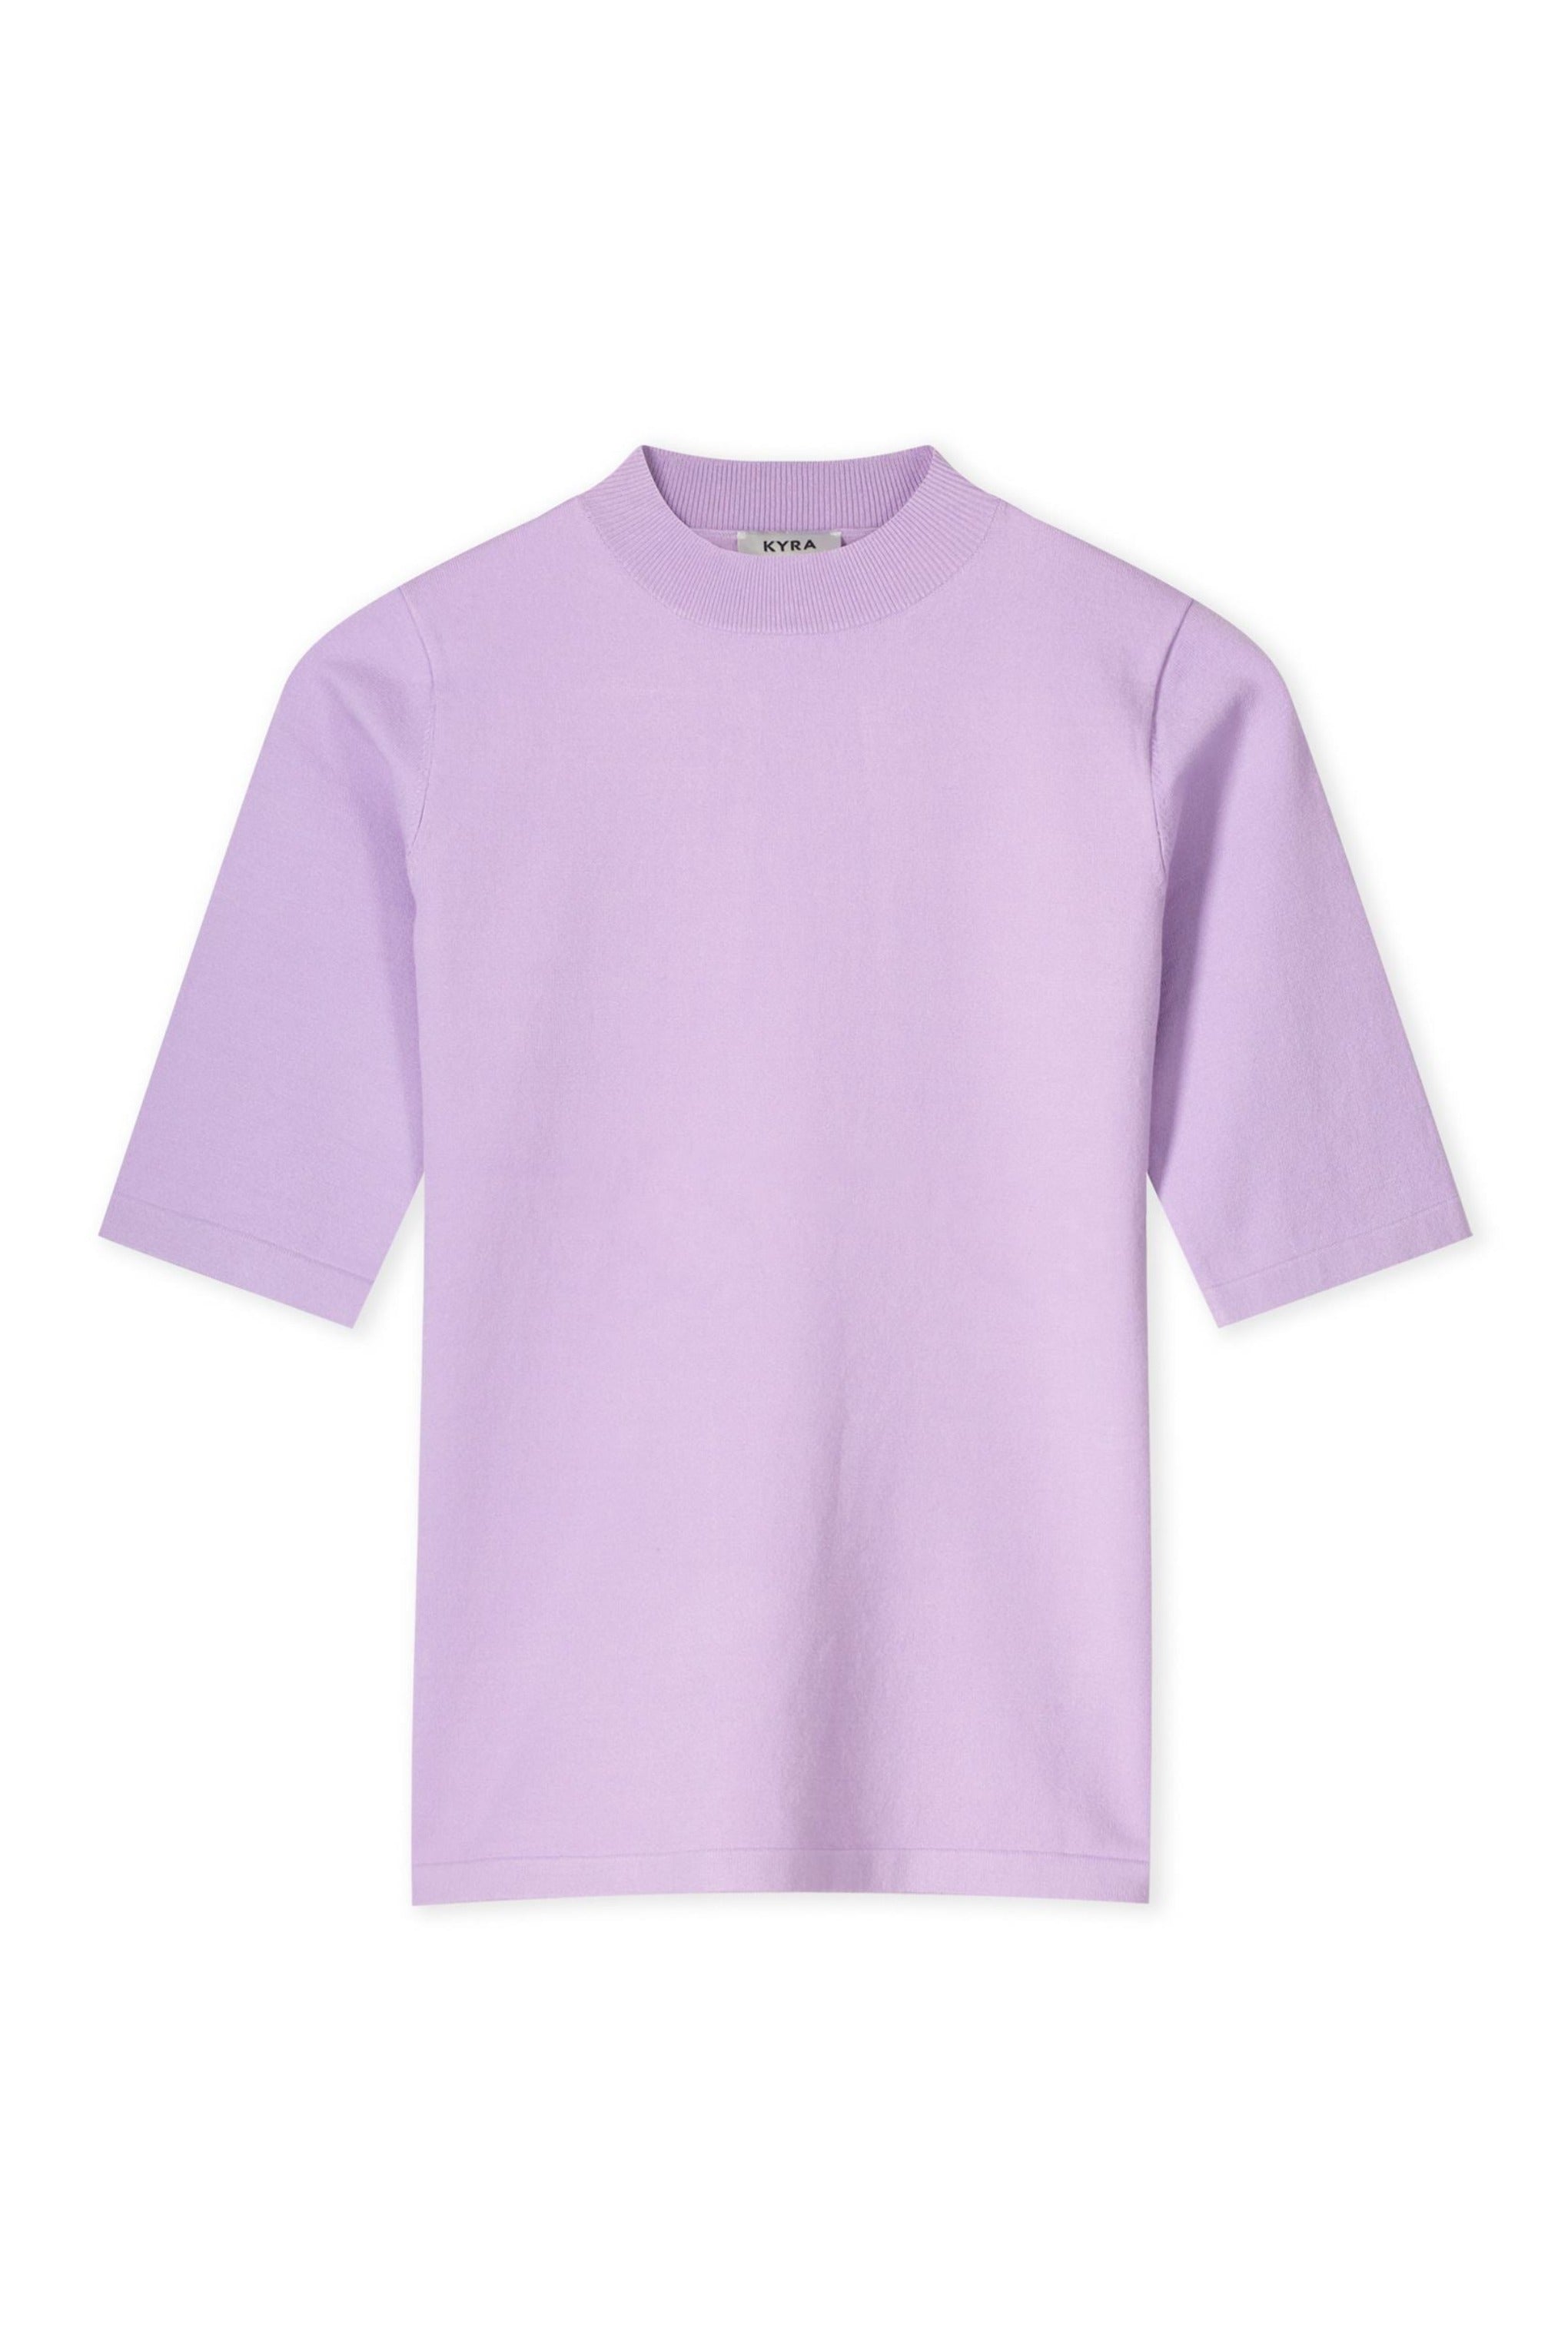 Flynn Short Sleeve Sweater - Fresh Lilac